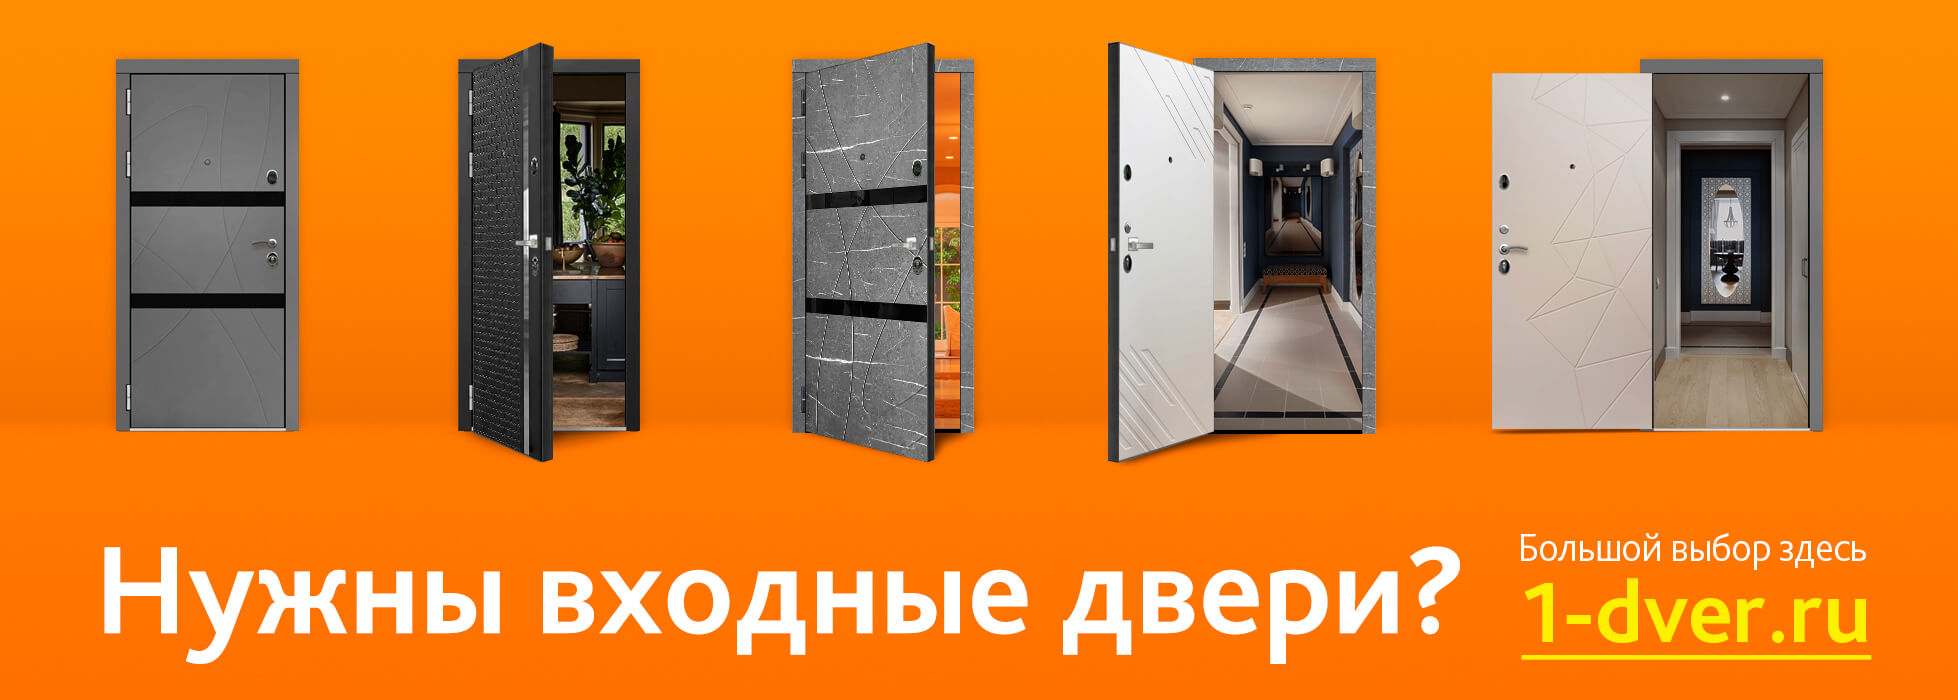 Нужны входные двери? Посмотрите наш сайт 1-dver.ru